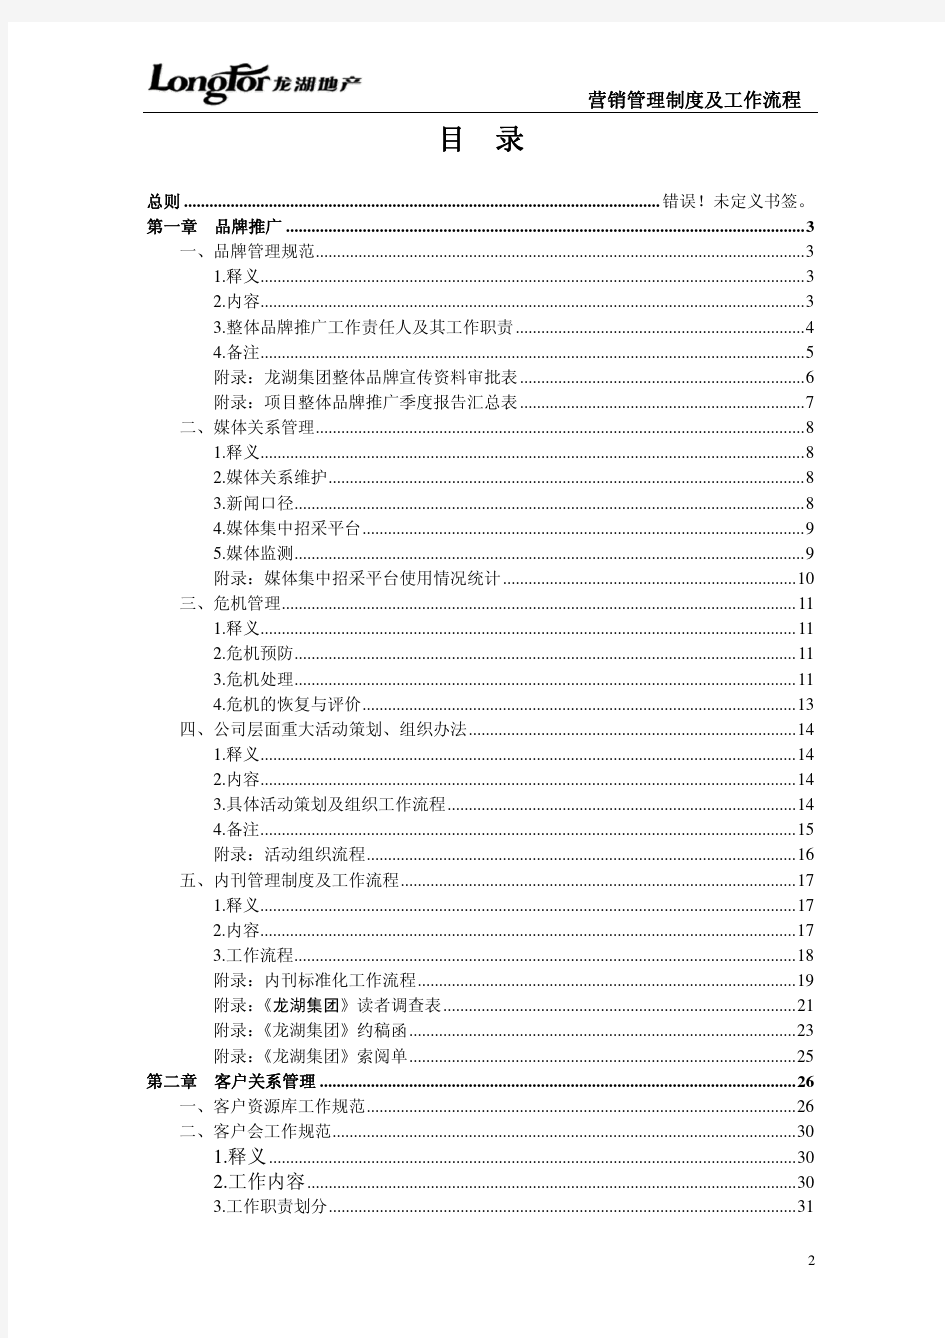 龙湖地产品牌推广与客户管理工作制度及流程(34)页